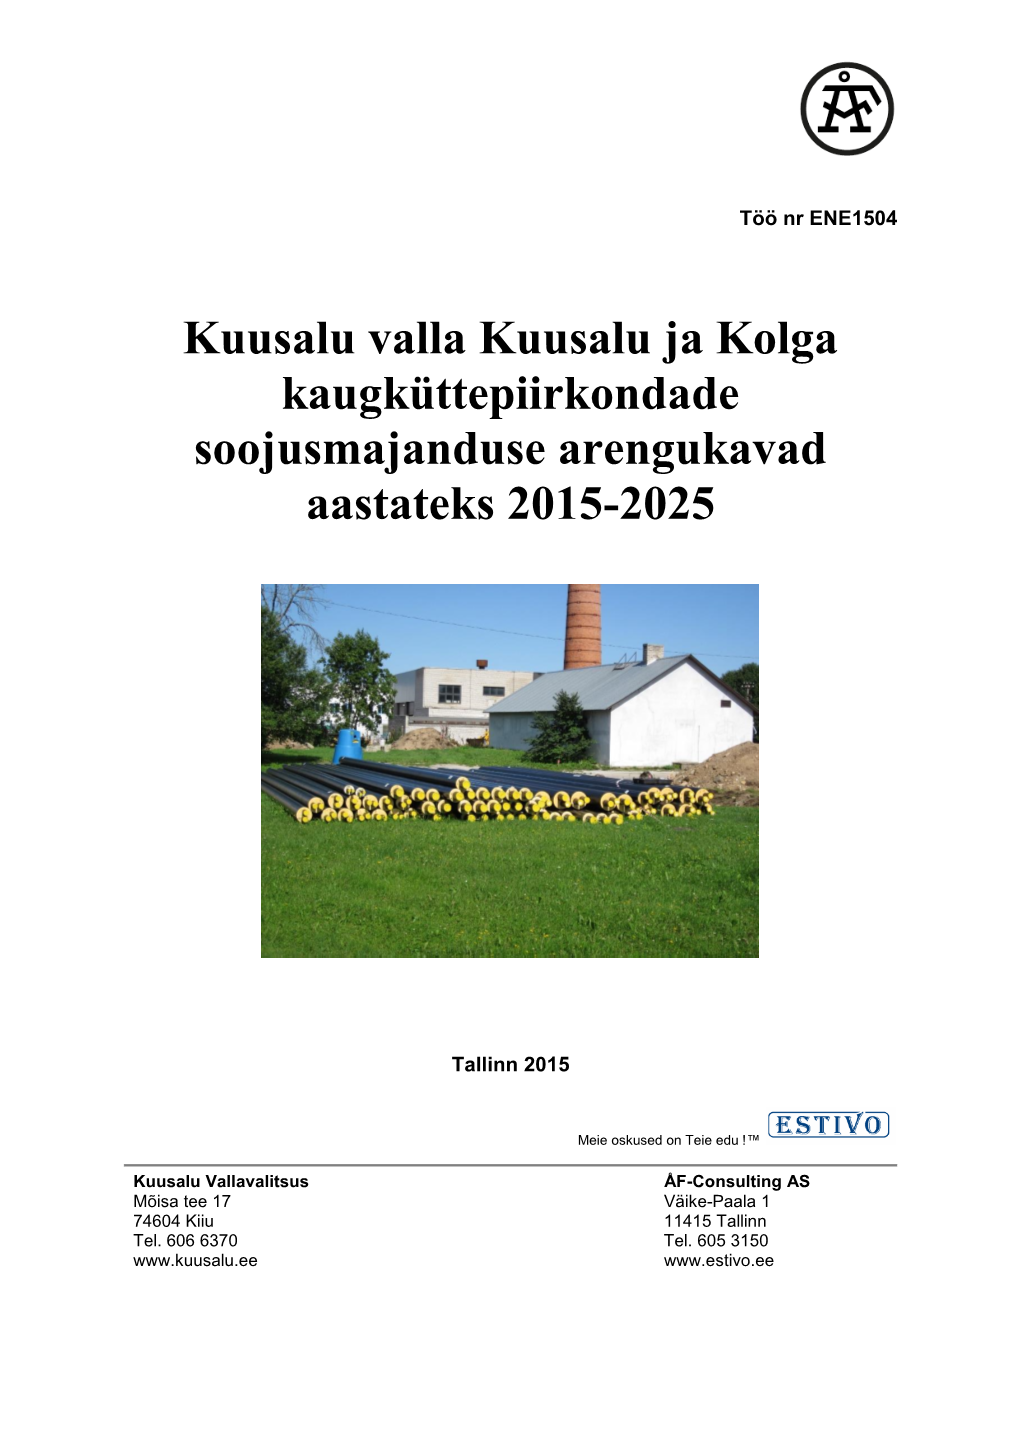 Kuusalu Valla Kuusalu Ja Kolga Kaugküttepiirkondade Soojusmajanduse Arengukavad Aastateks 2015-2025